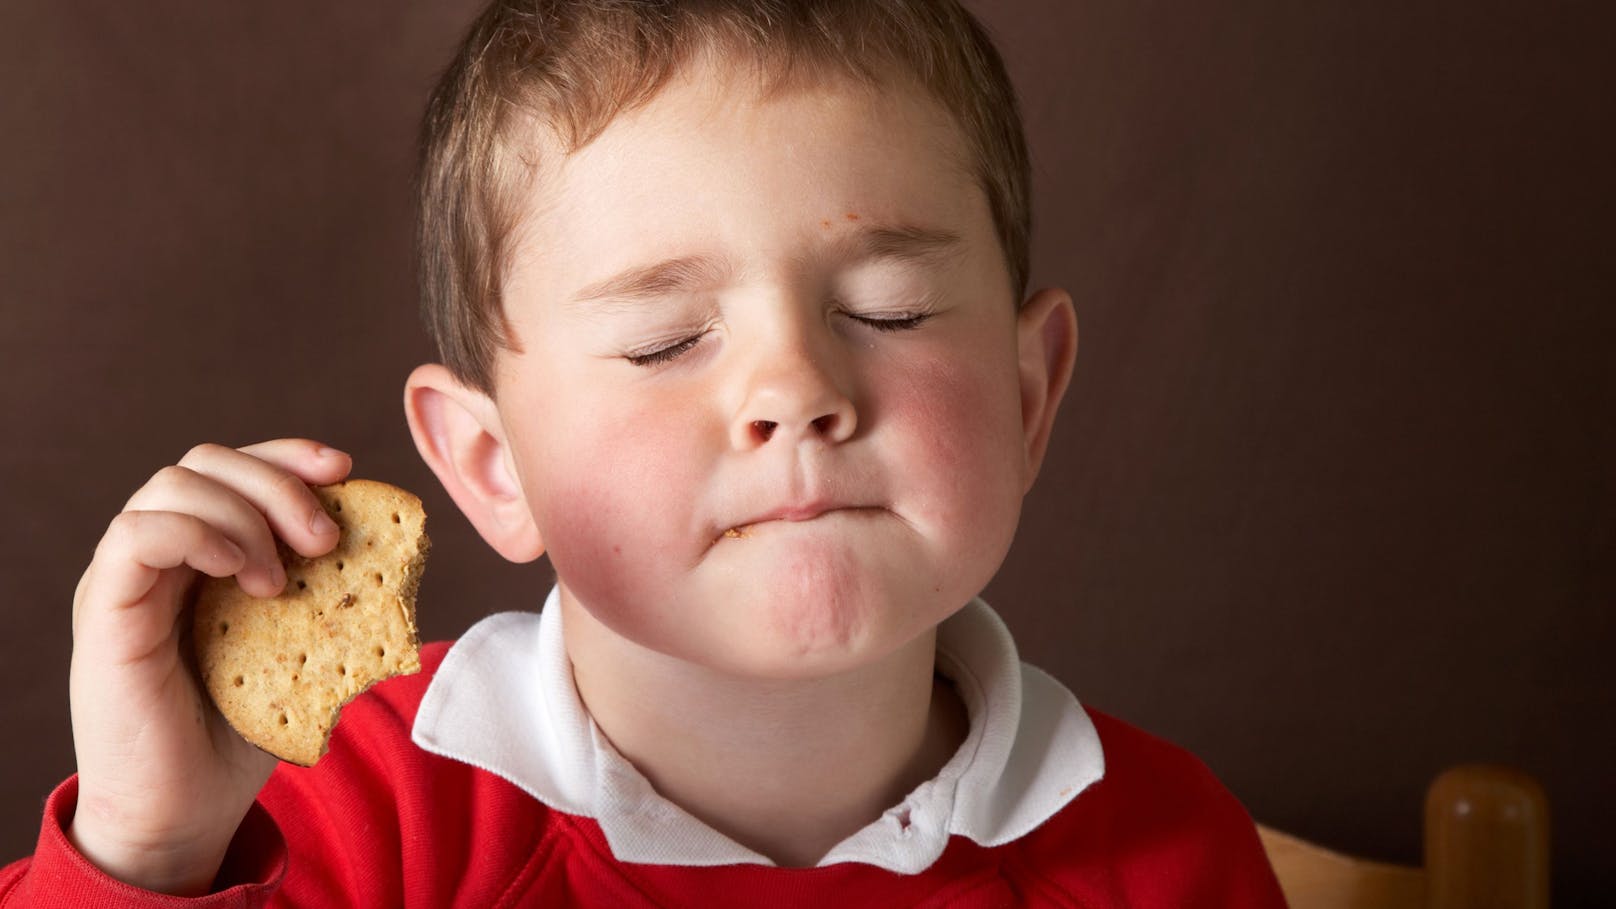 Kekse für Kinder im Test als Zuckerfallen entlarvt